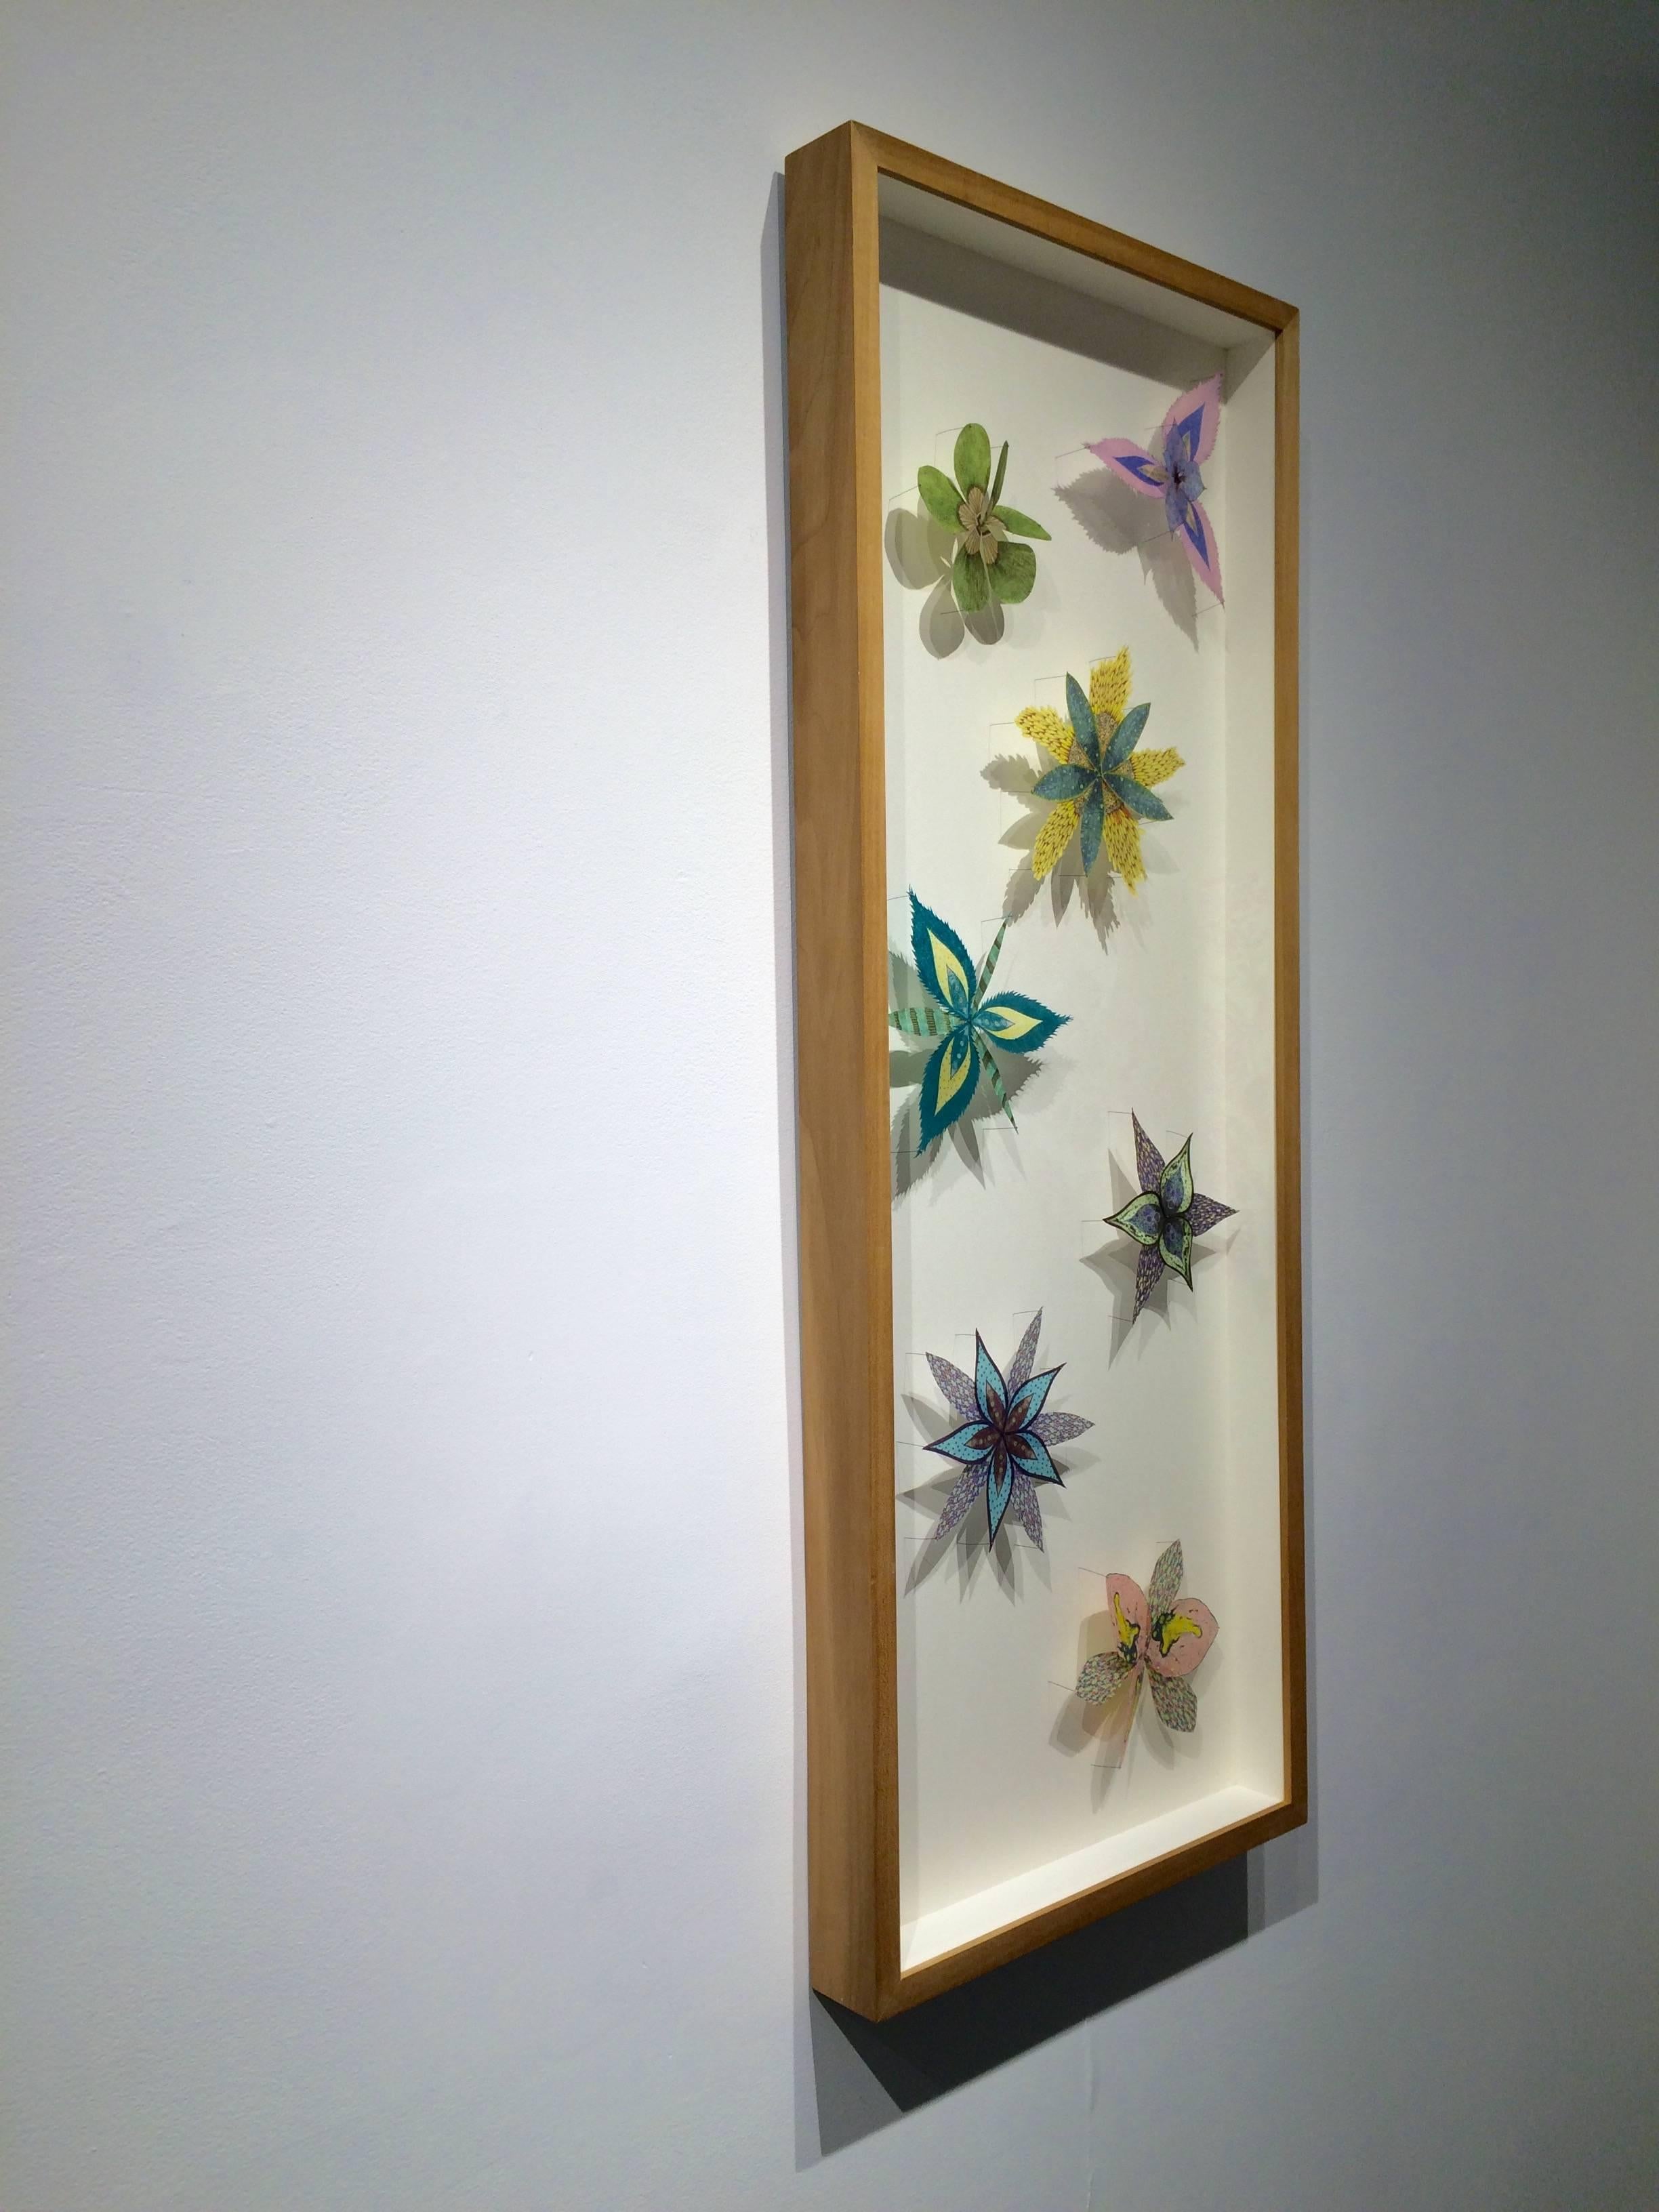 Colorburst Pinwheels, genadelte Papierblumen in Grün, Rosa, Gelb, Lila (Zeitgenössisch), Sculpture, von Jill Parisi